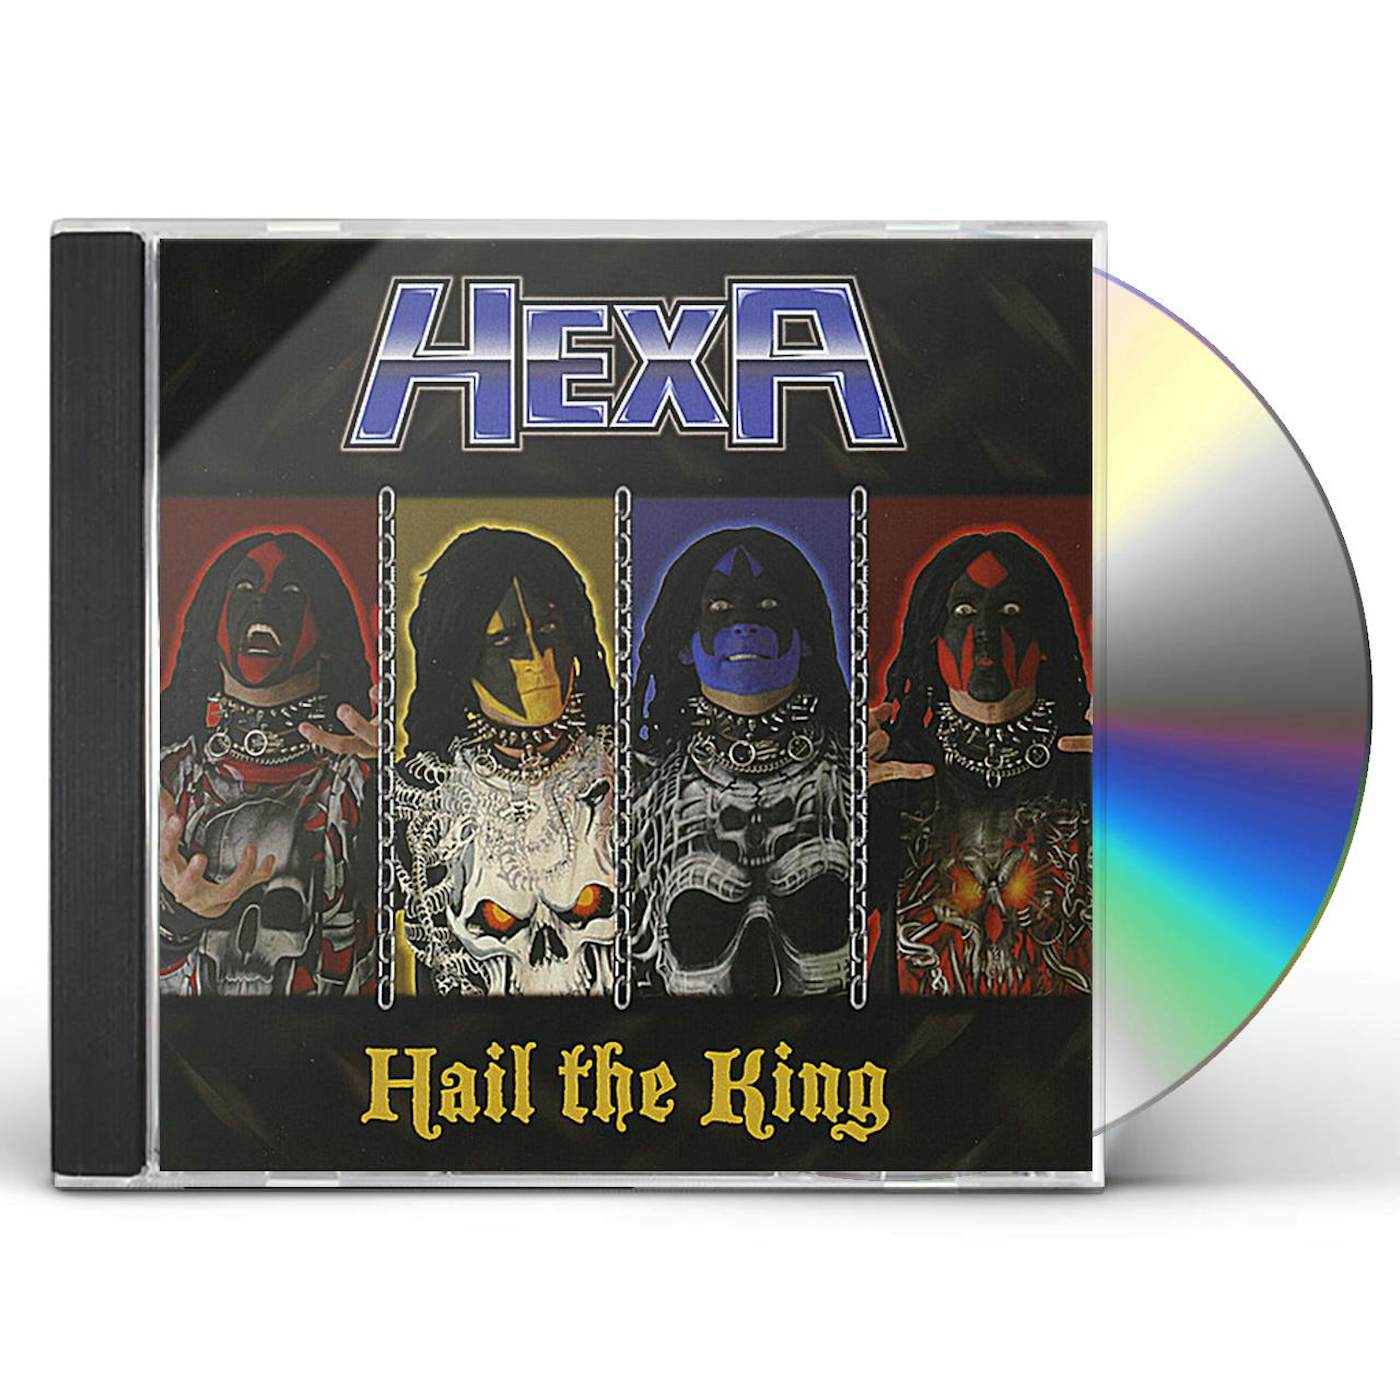 HEXA HAIL THE KING CD